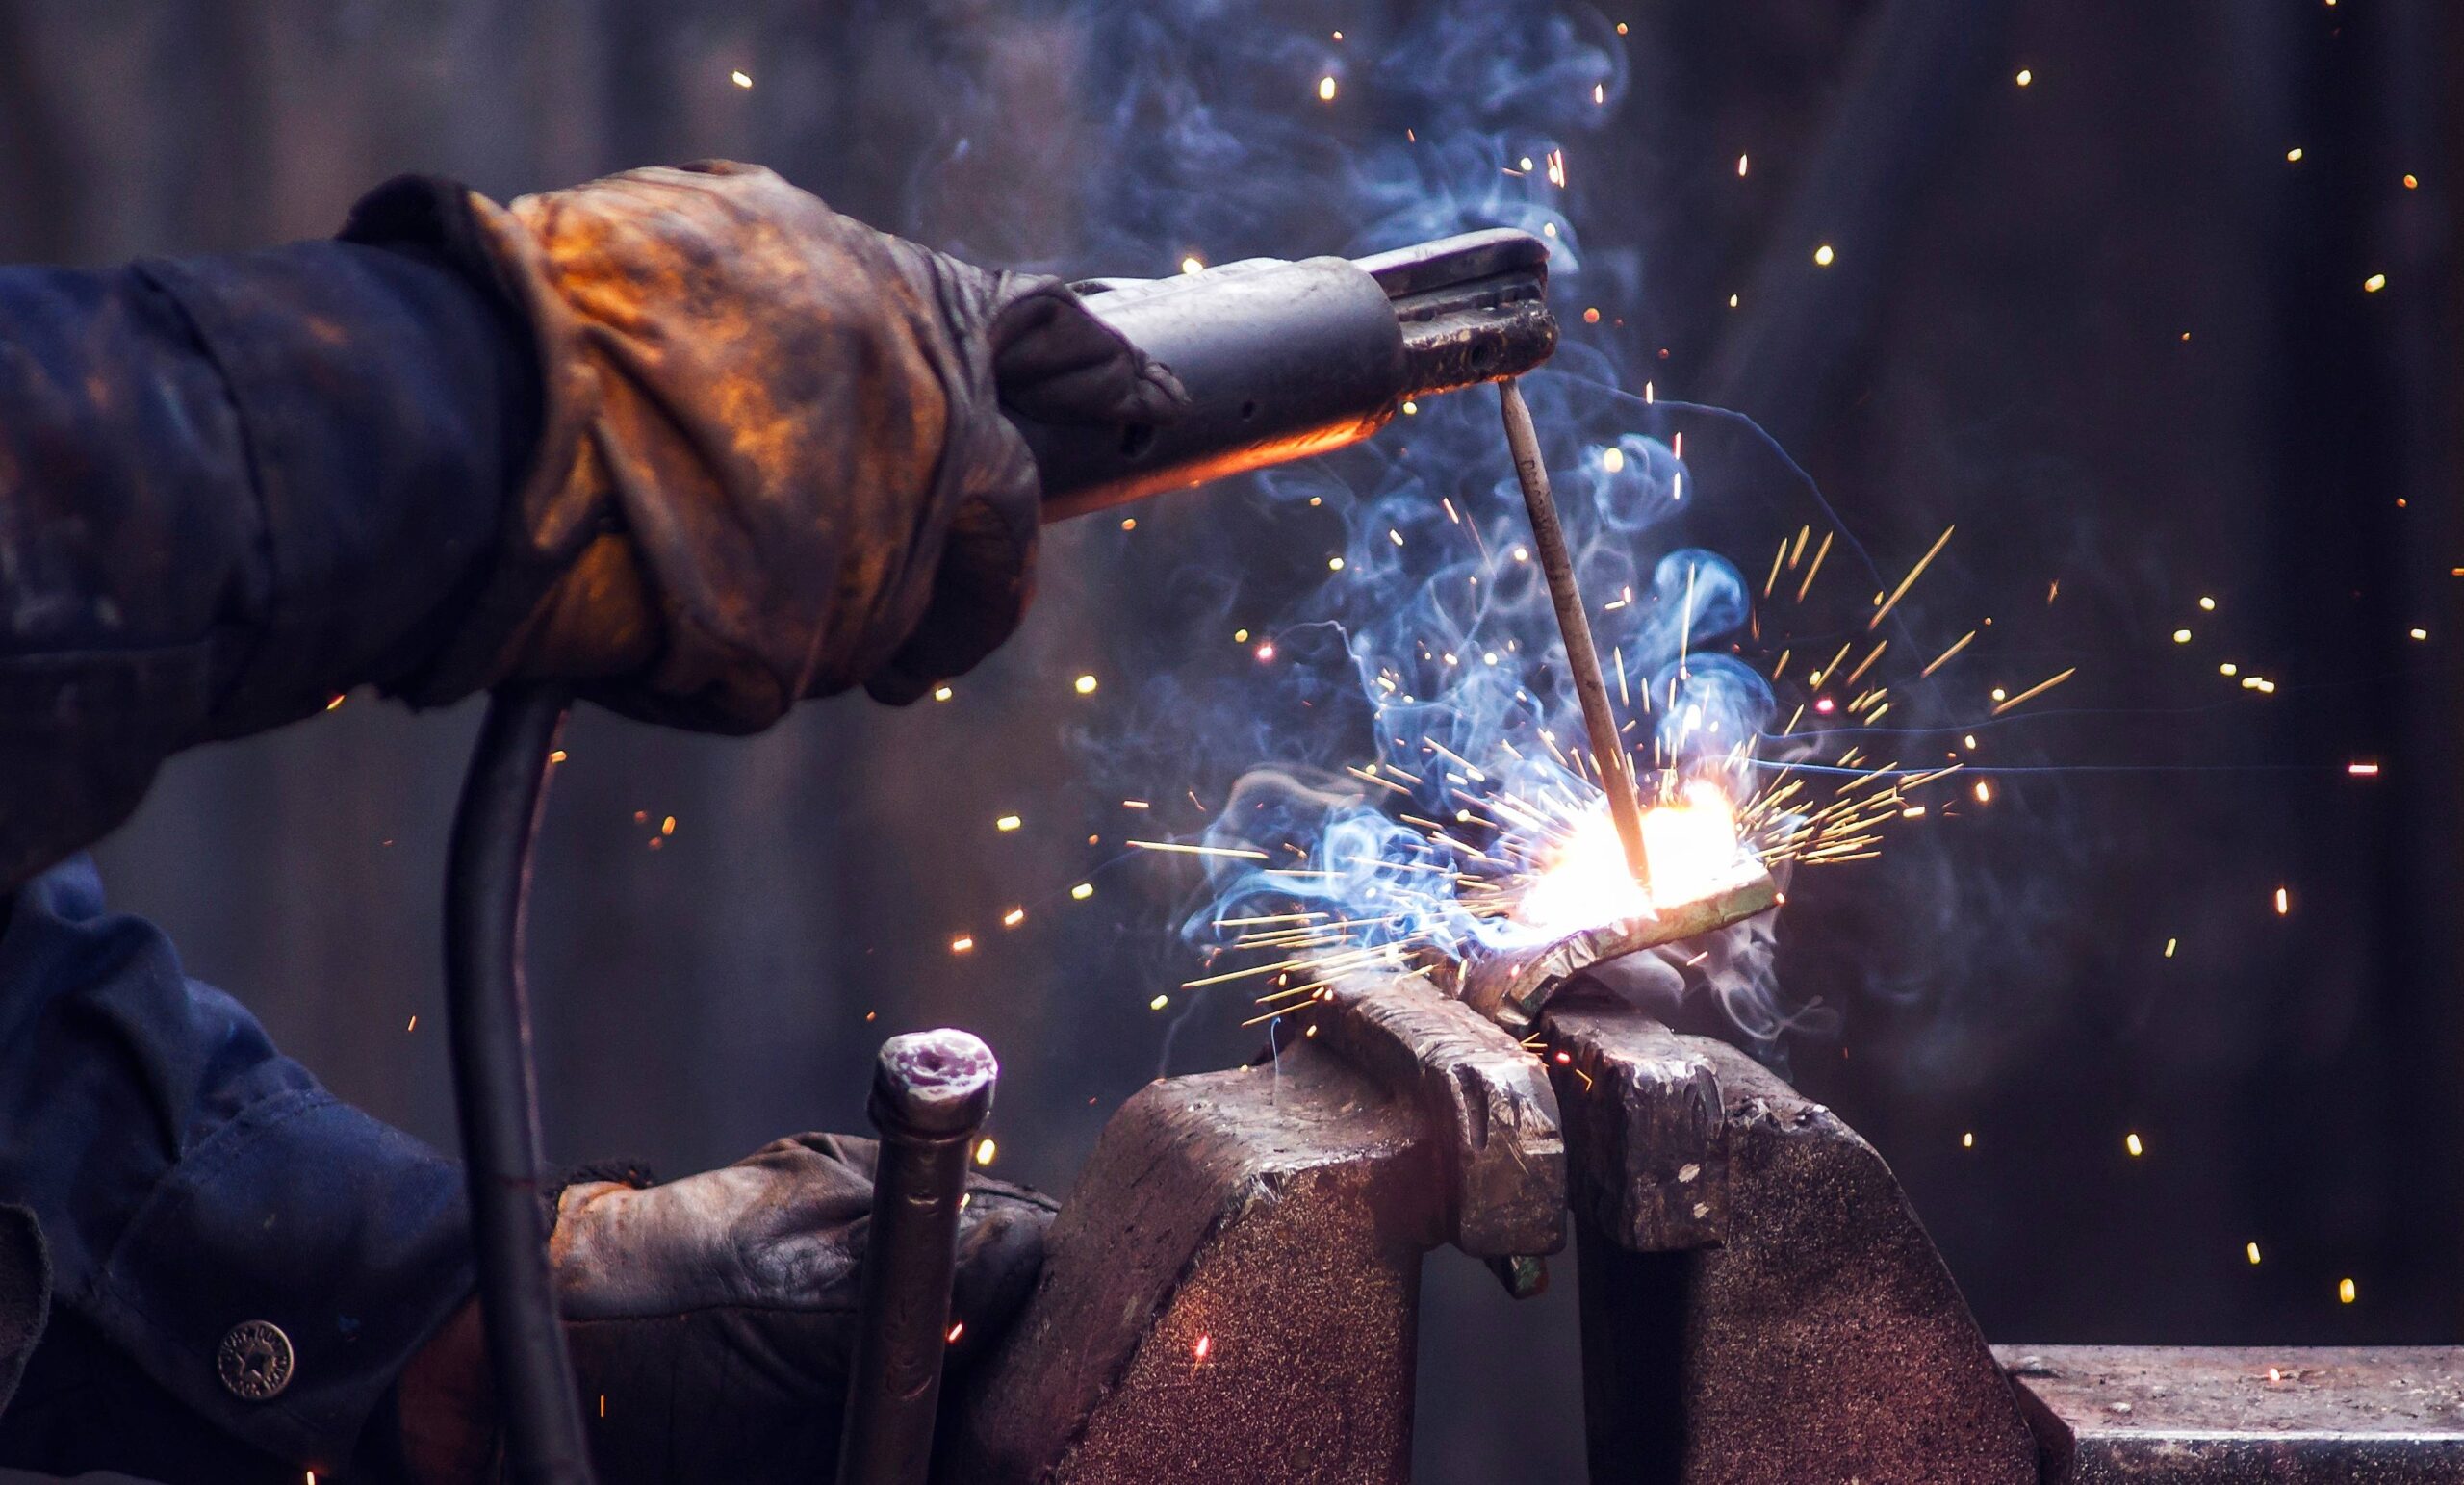 industry worker welding iron